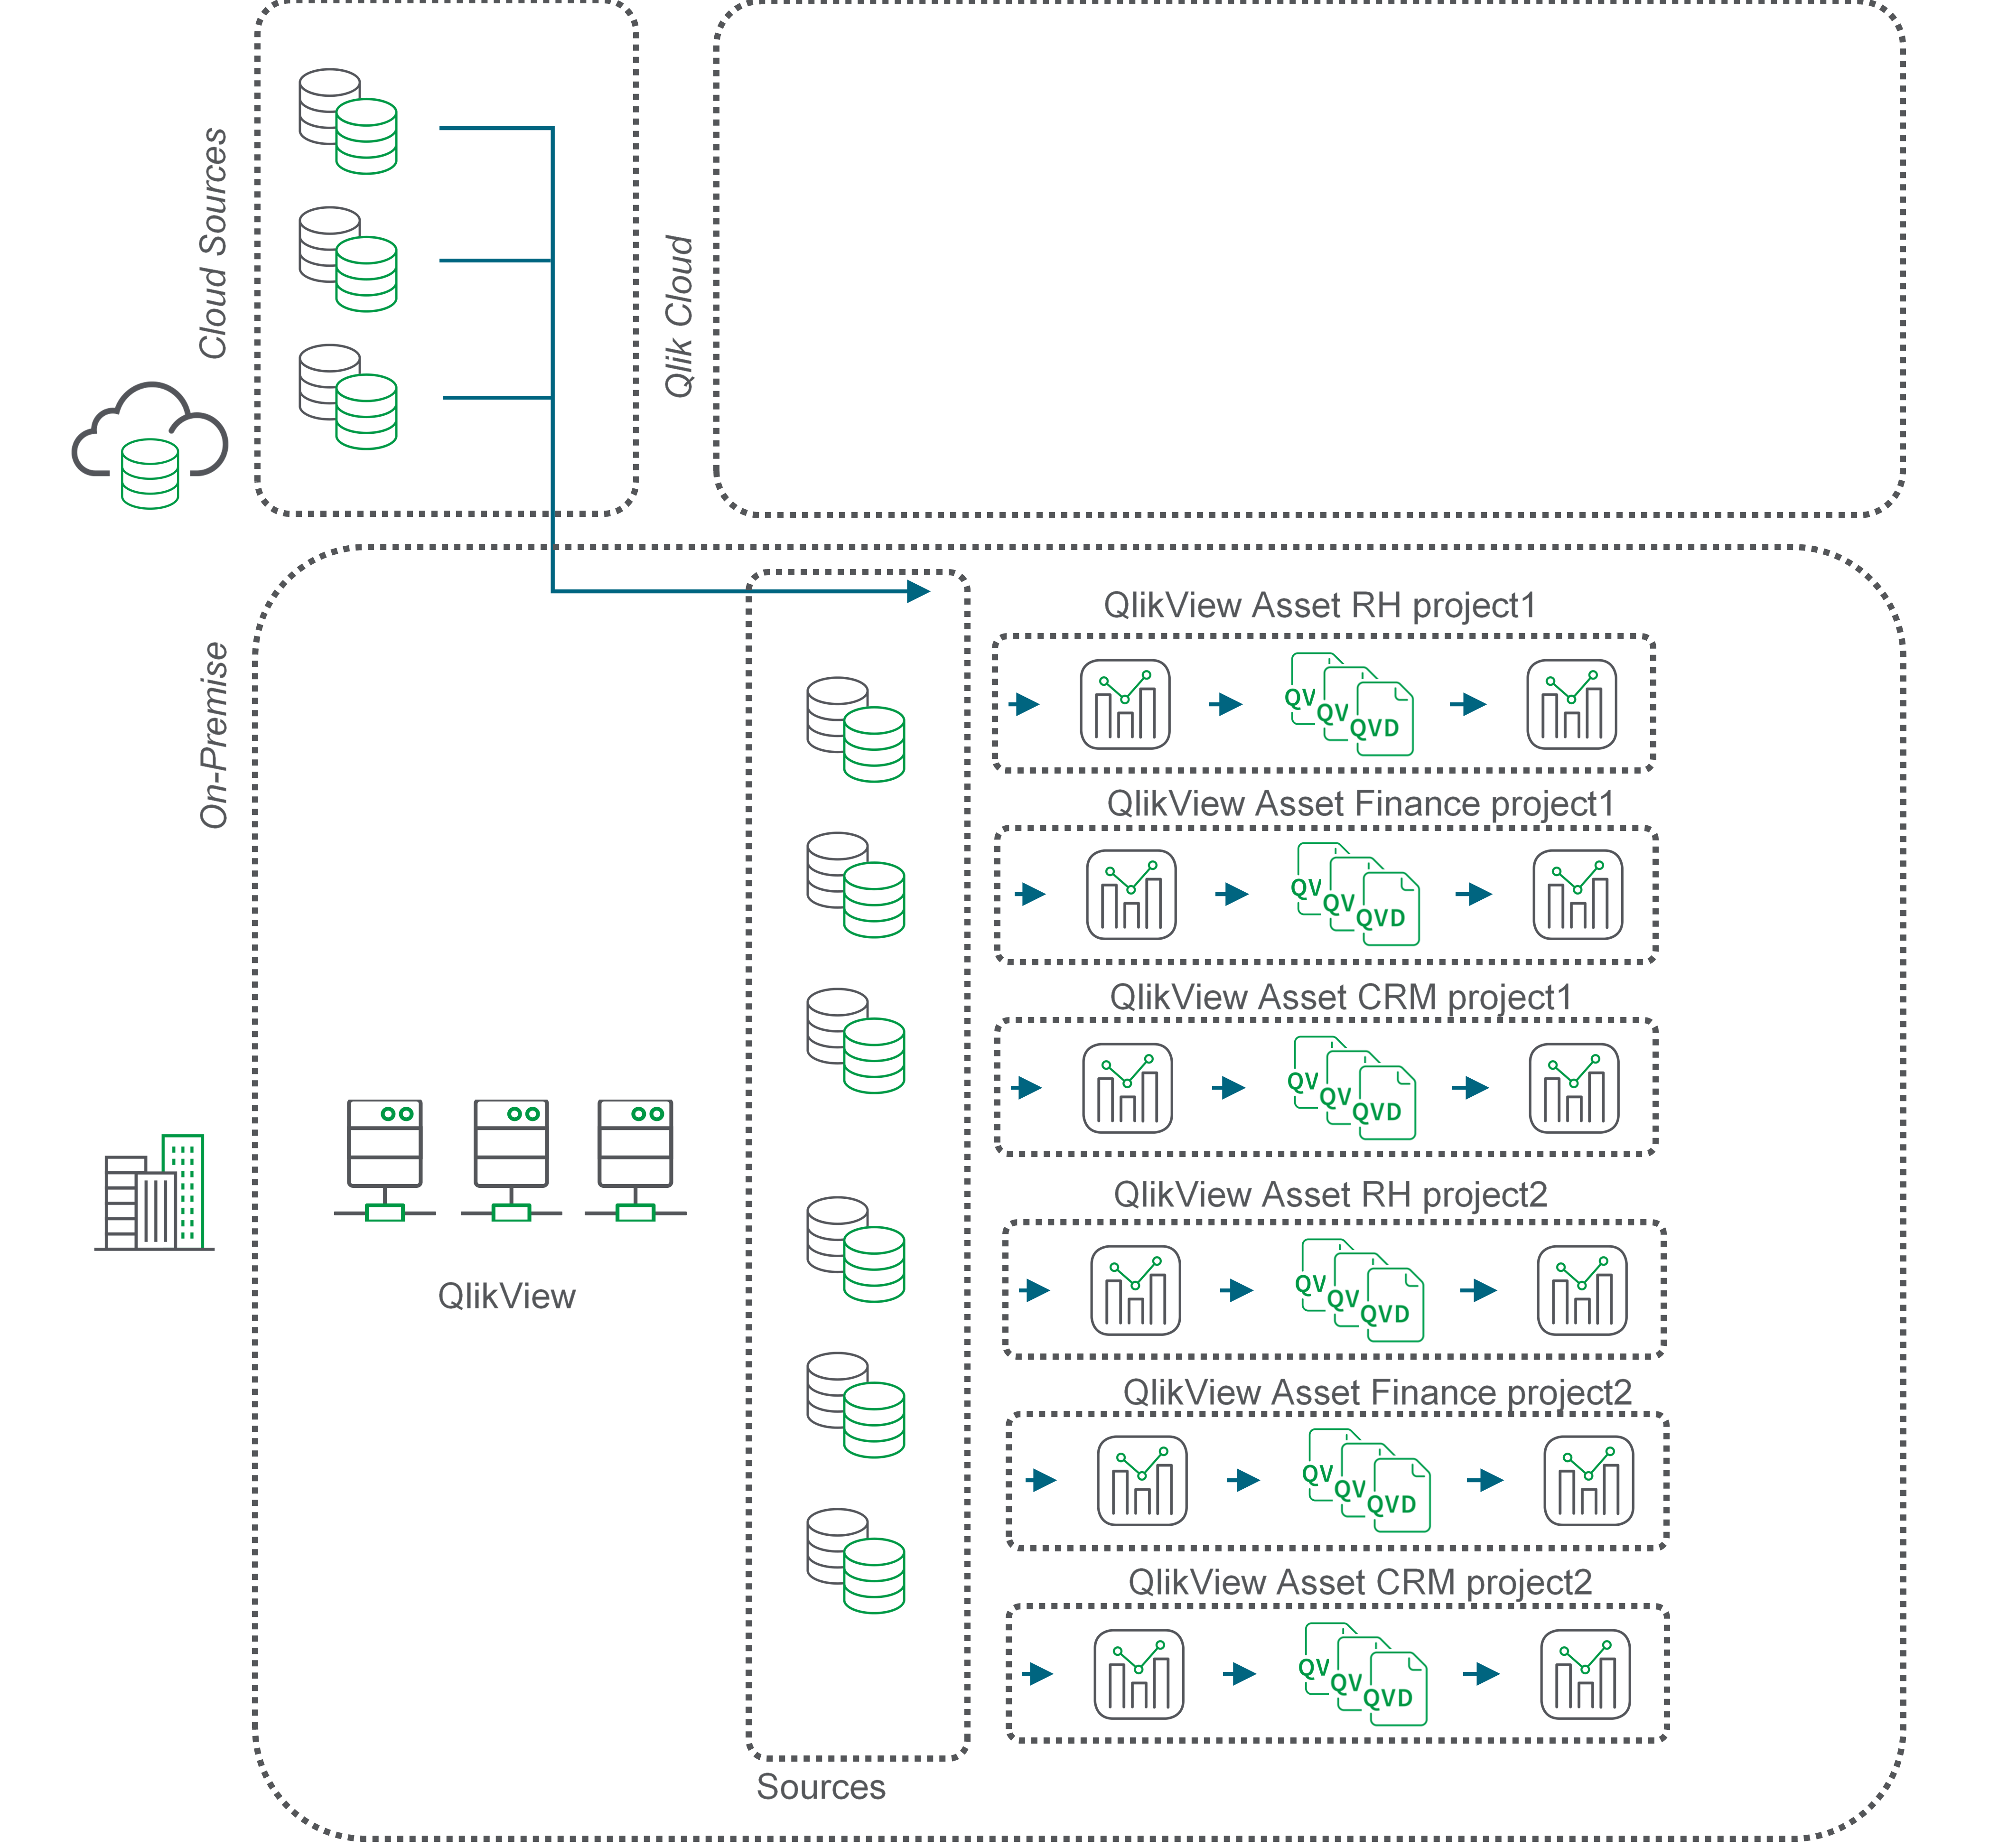 Блок-схема, описывающая перенос QVD при использовании платформы с несколькими проектами.